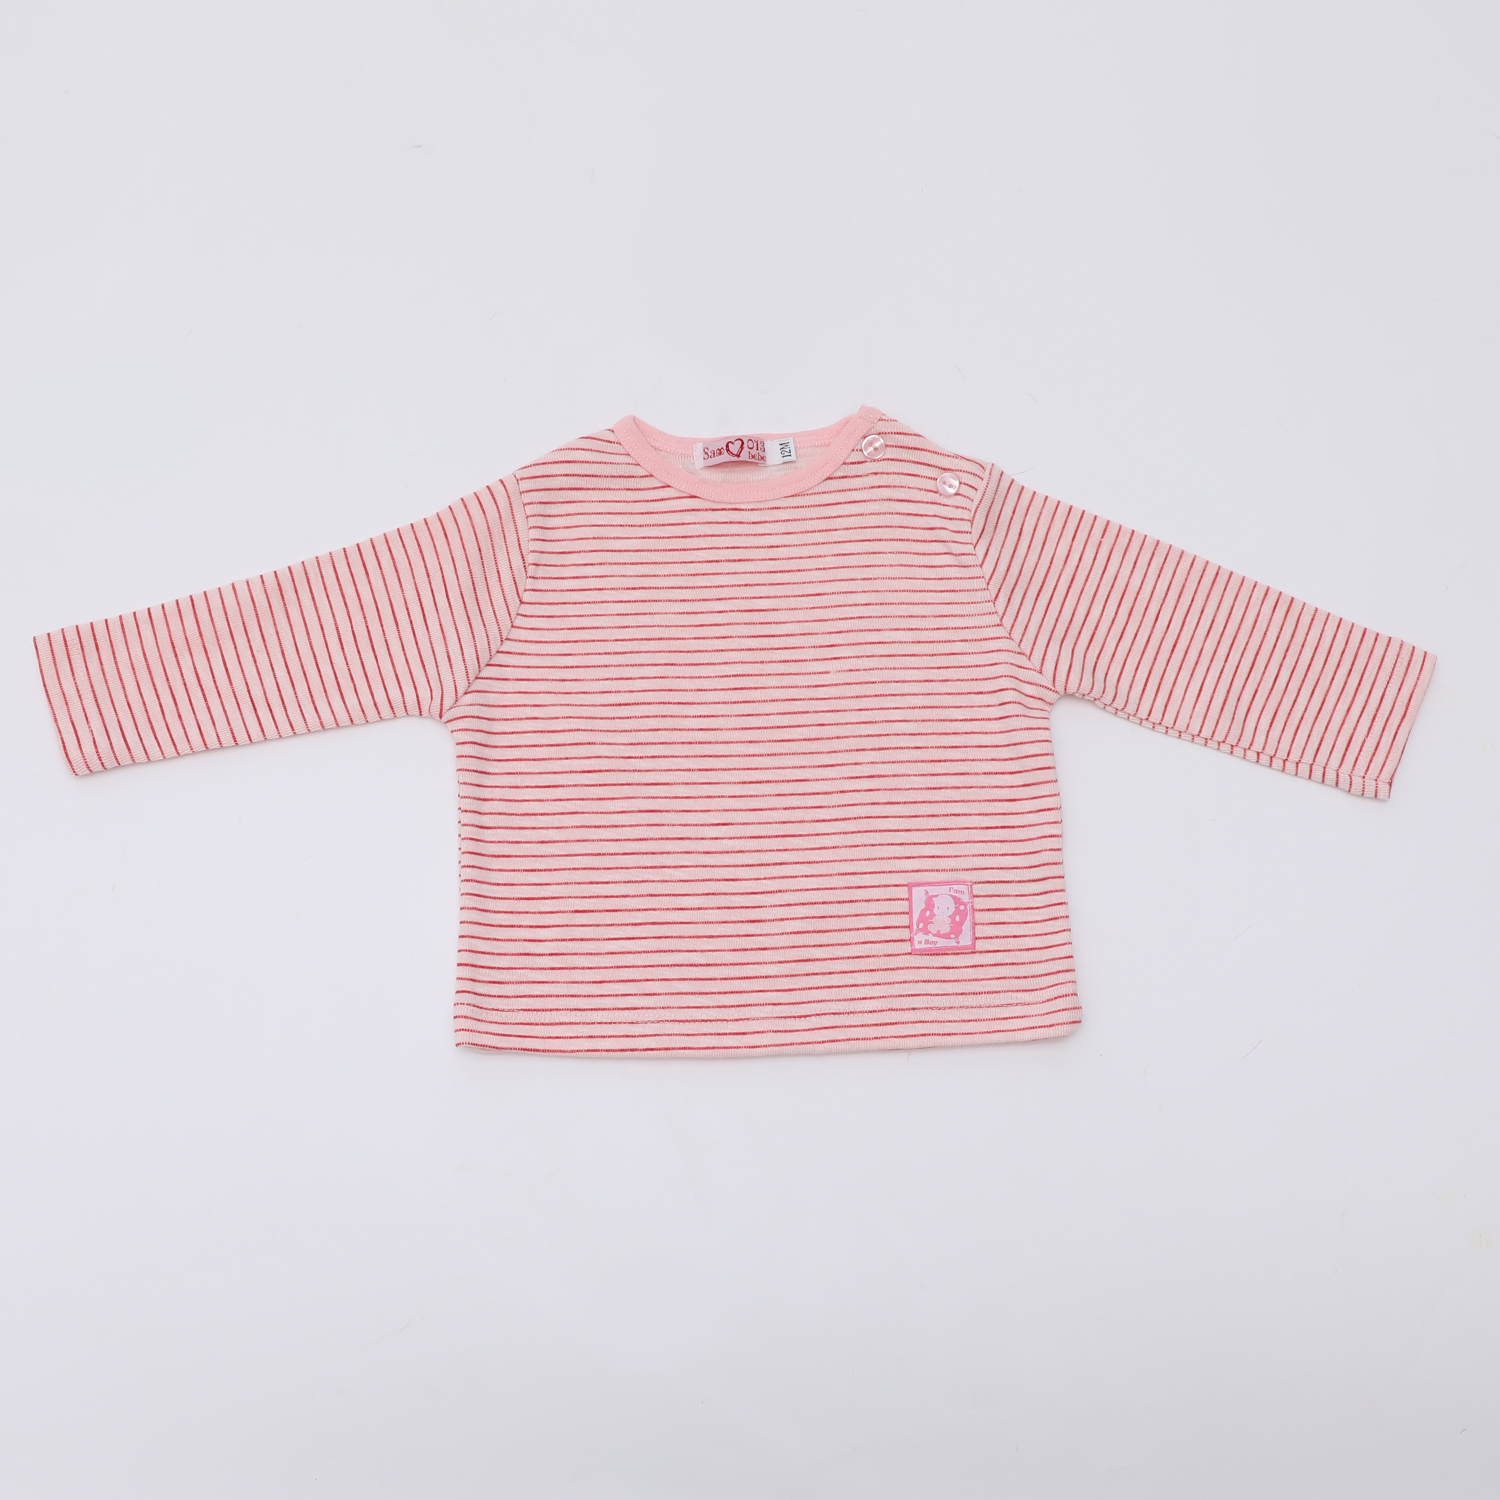 Παιδικά/Girls/Ρούχα/Μπλούζες Μακρυμάνικες SAM 0-13 - Βρεφική μπλούζα SAM 0-13 ριγέ ροζ φούξια